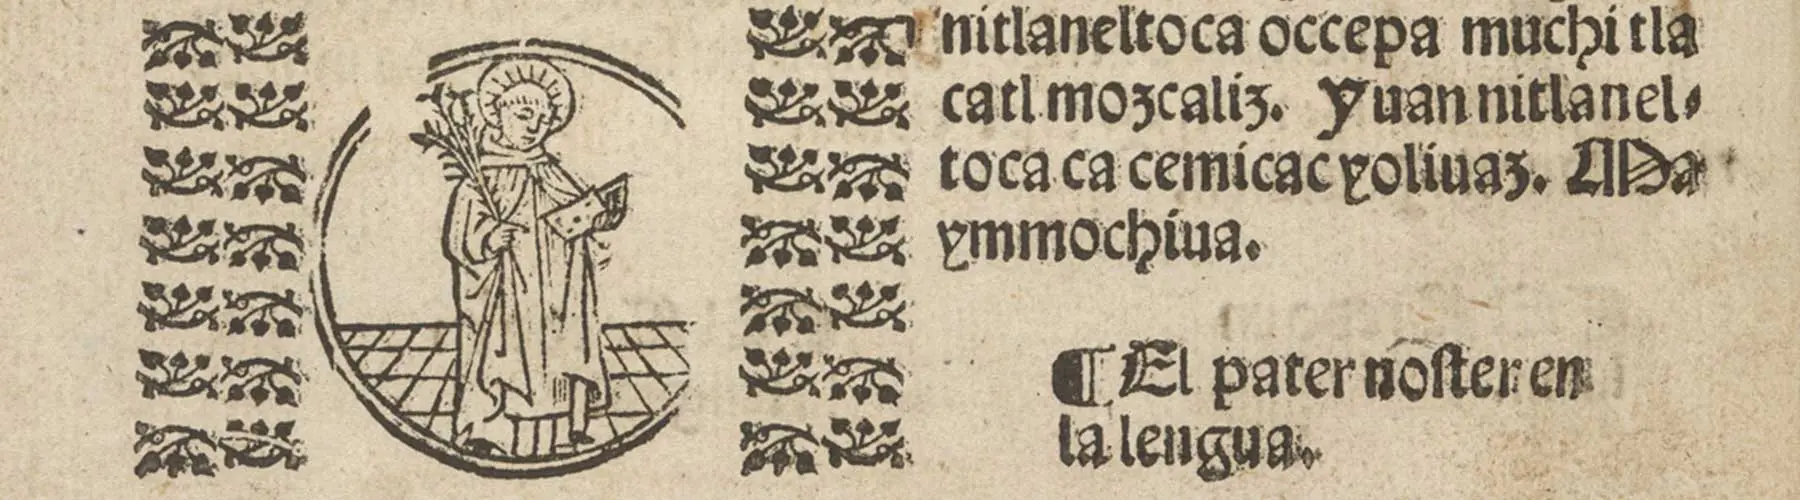 image of Spanish manuscript